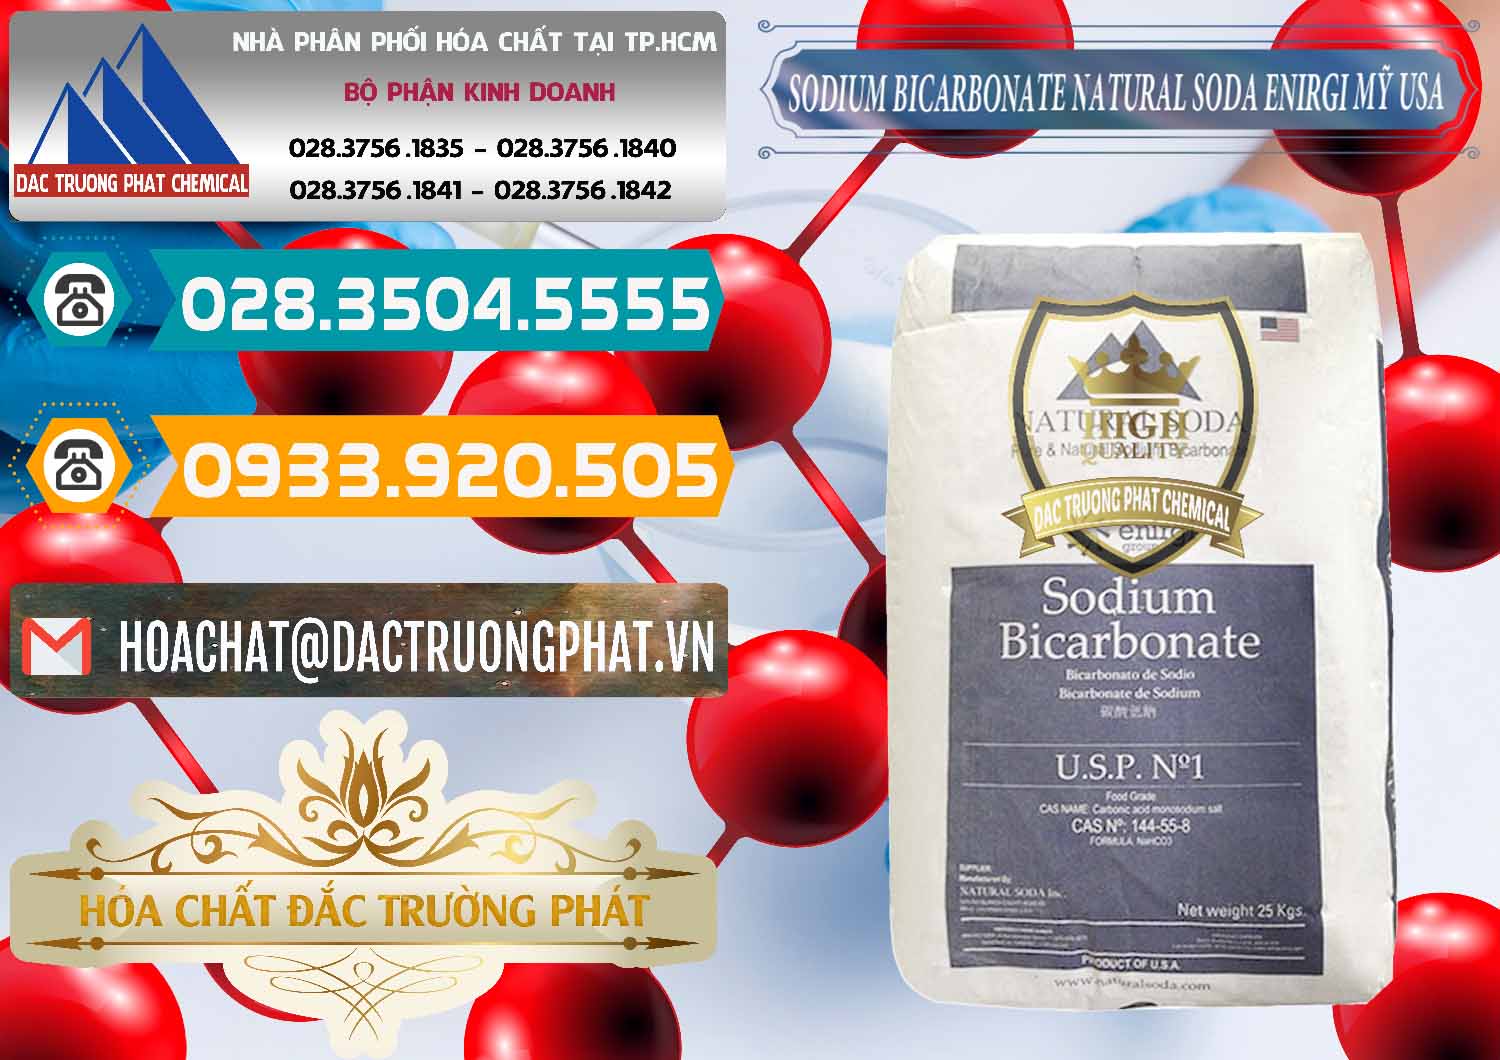 Nhà nhập khẩu - bán Sodium Bicarbonate – Bicar NaHCO3 Food Grade Natural Soda Enirgi Mỹ USA - 0257 - Chuyên cung cấp - phân phối hóa chất tại TP.HCM - congtyhoachat.vn